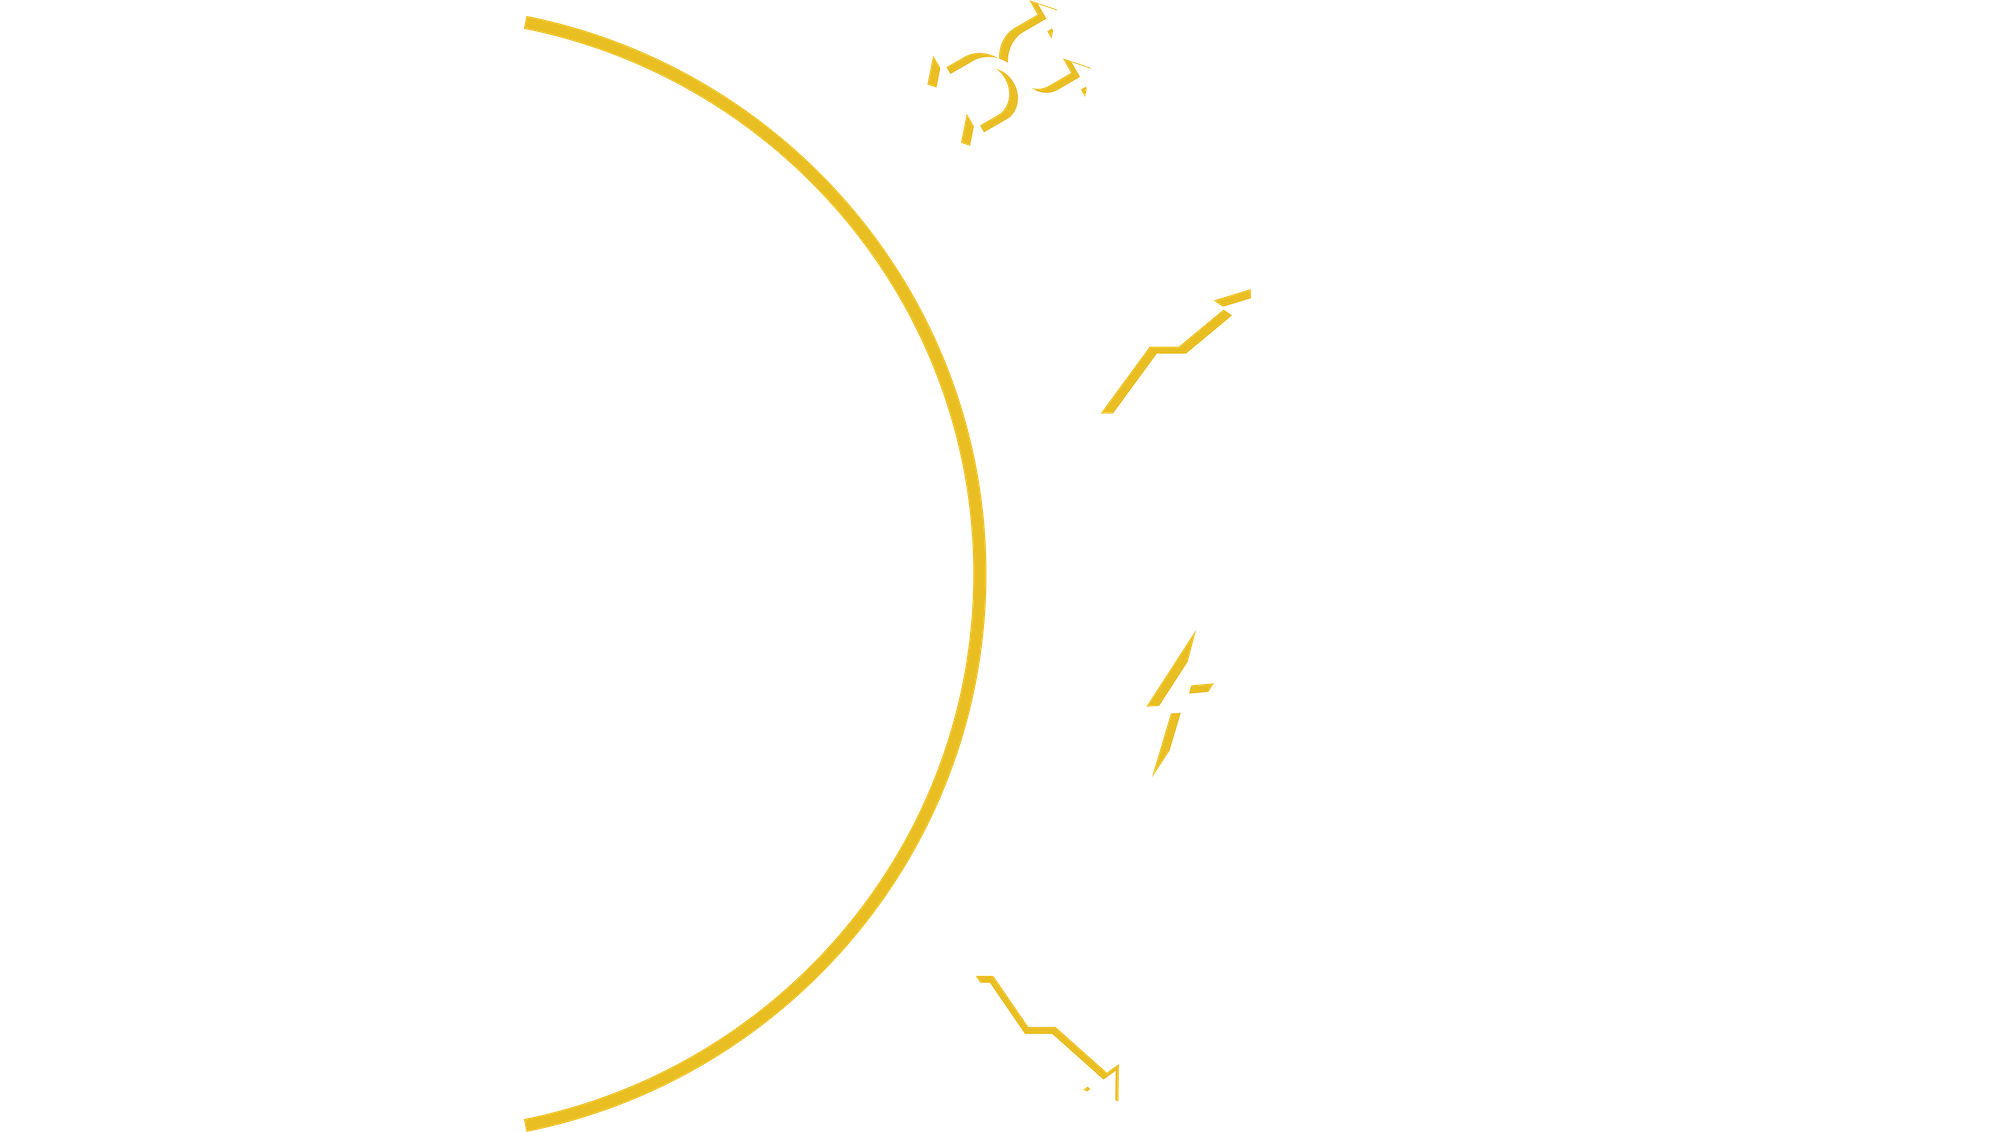 Ventajas de nuestro servicio de manufactura ligera: Flexibilidad, eficicacia en producción, rapidez y reducción de costos